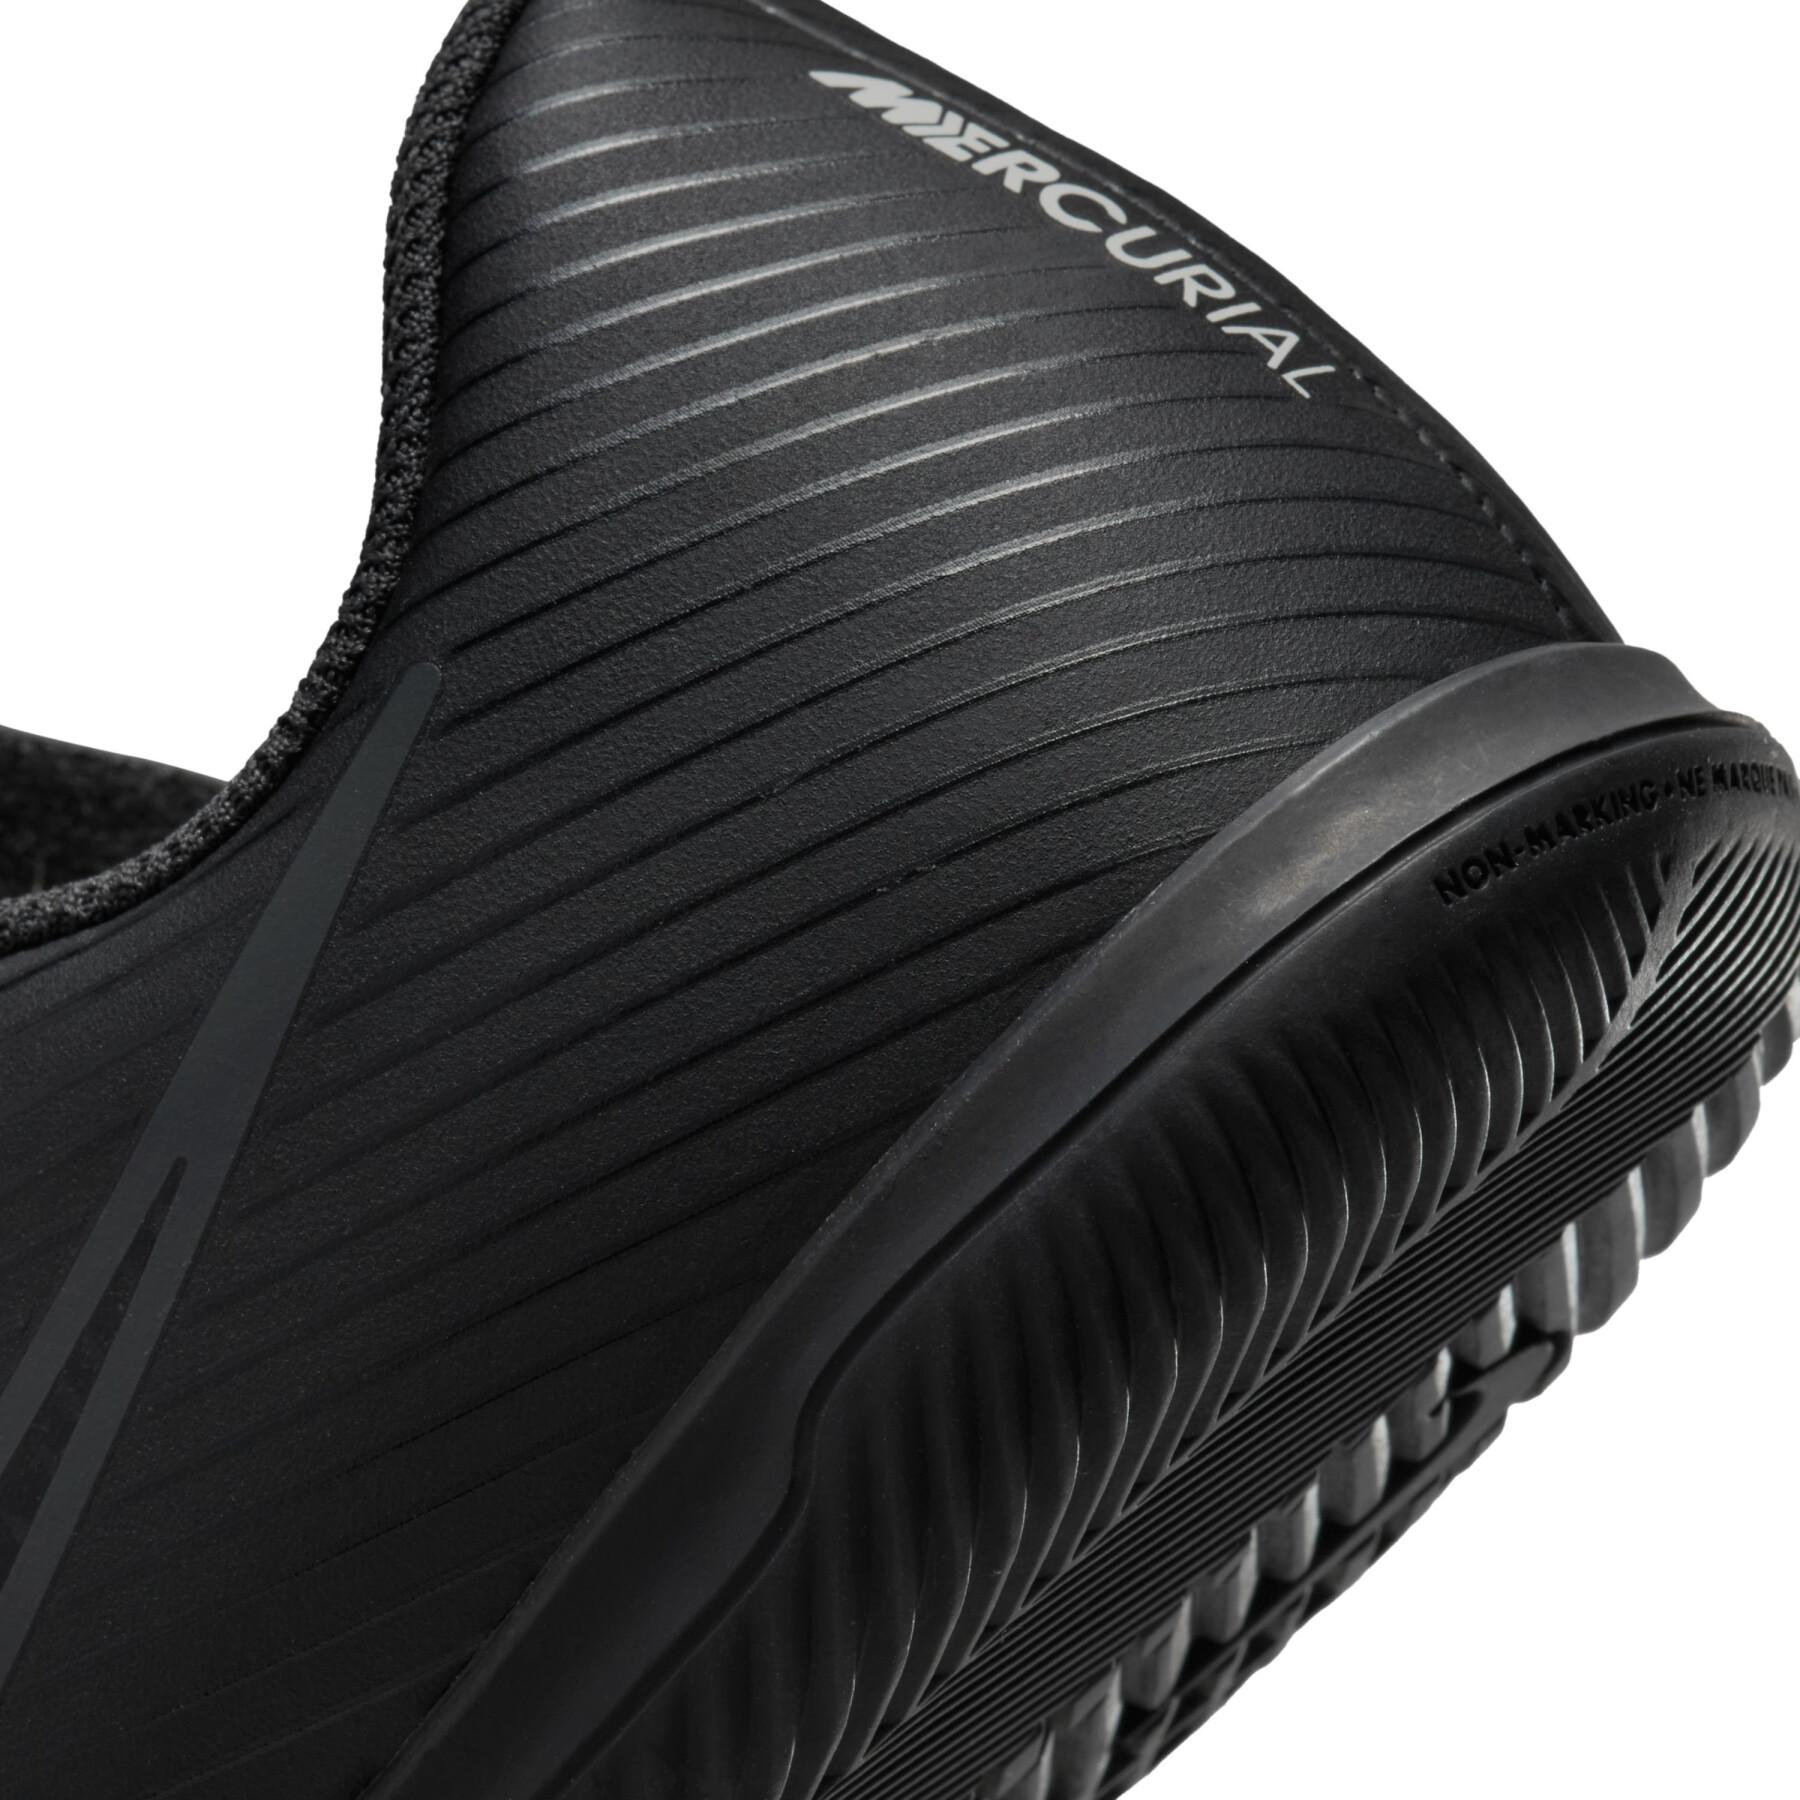 Zapatillas de fútbol para niños Nike Mercurial Vapor 15 Club IC - Shadow Black Pack